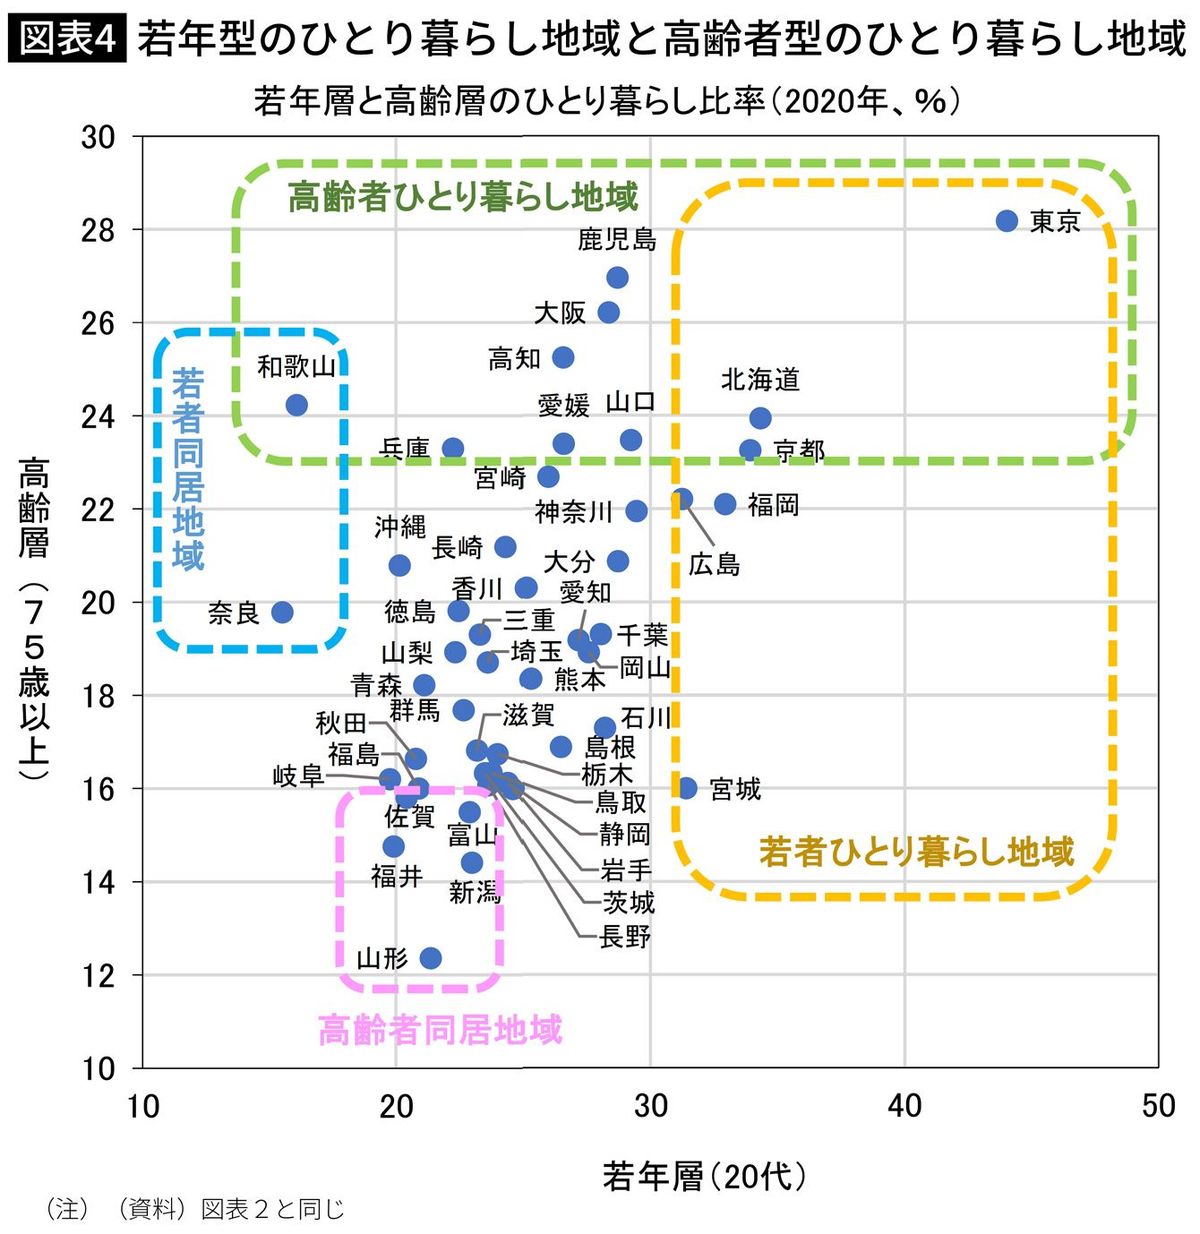 【図表】若年型のひとり暮らし地域と高齢者型のひとり暮らし地域